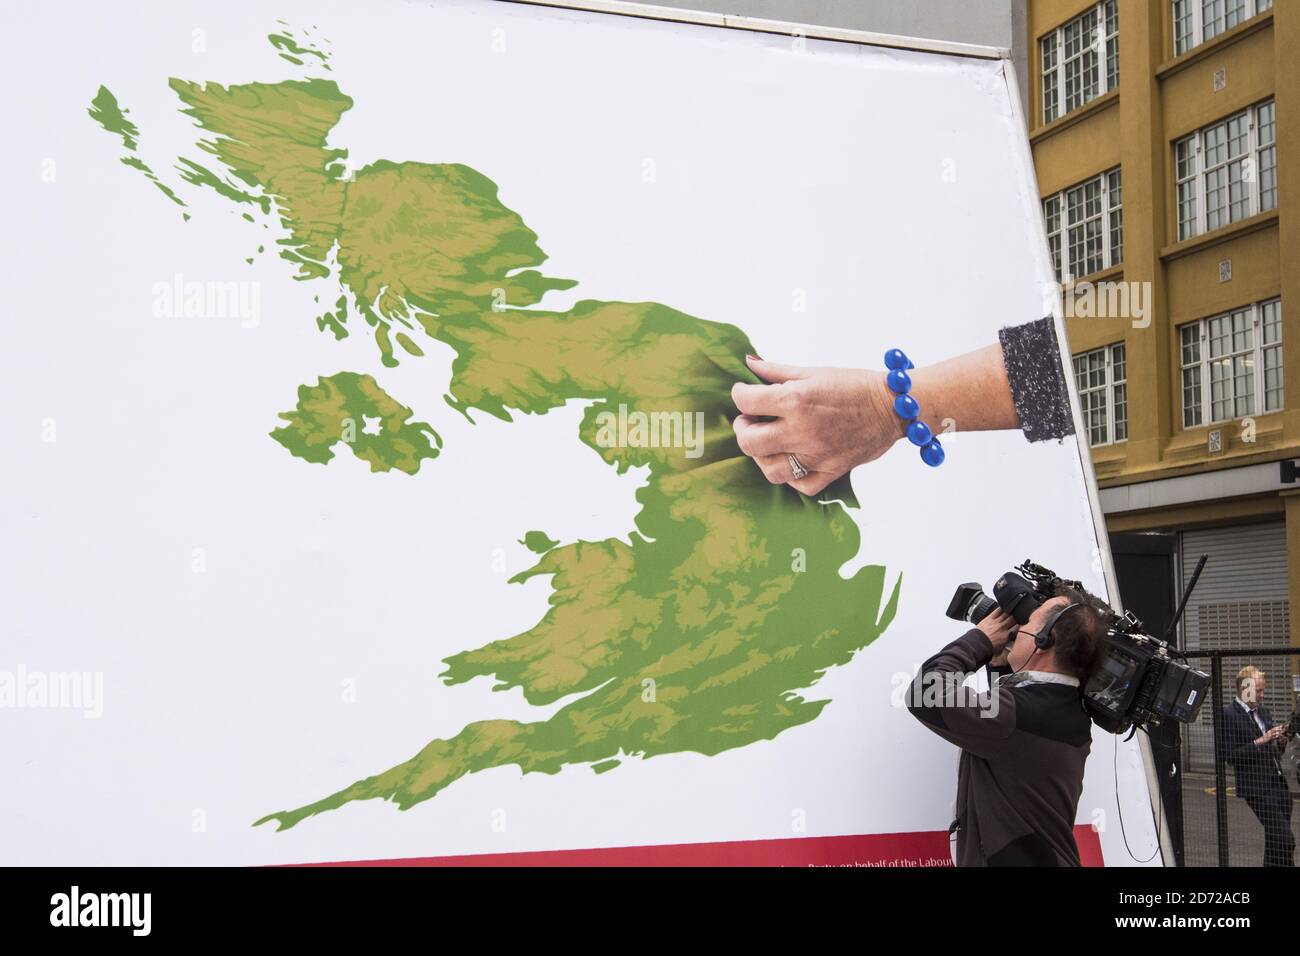 Vista generale al lancio di un poster della campagna del Partito laburista, sulla South Bank, nel centro di Londra. Data immagine: Giovedì 11 maggio 2017. Il credito fotografico dovrebbe essere: Matt Crossick/ EMPICS Entertainment. Foto Stock